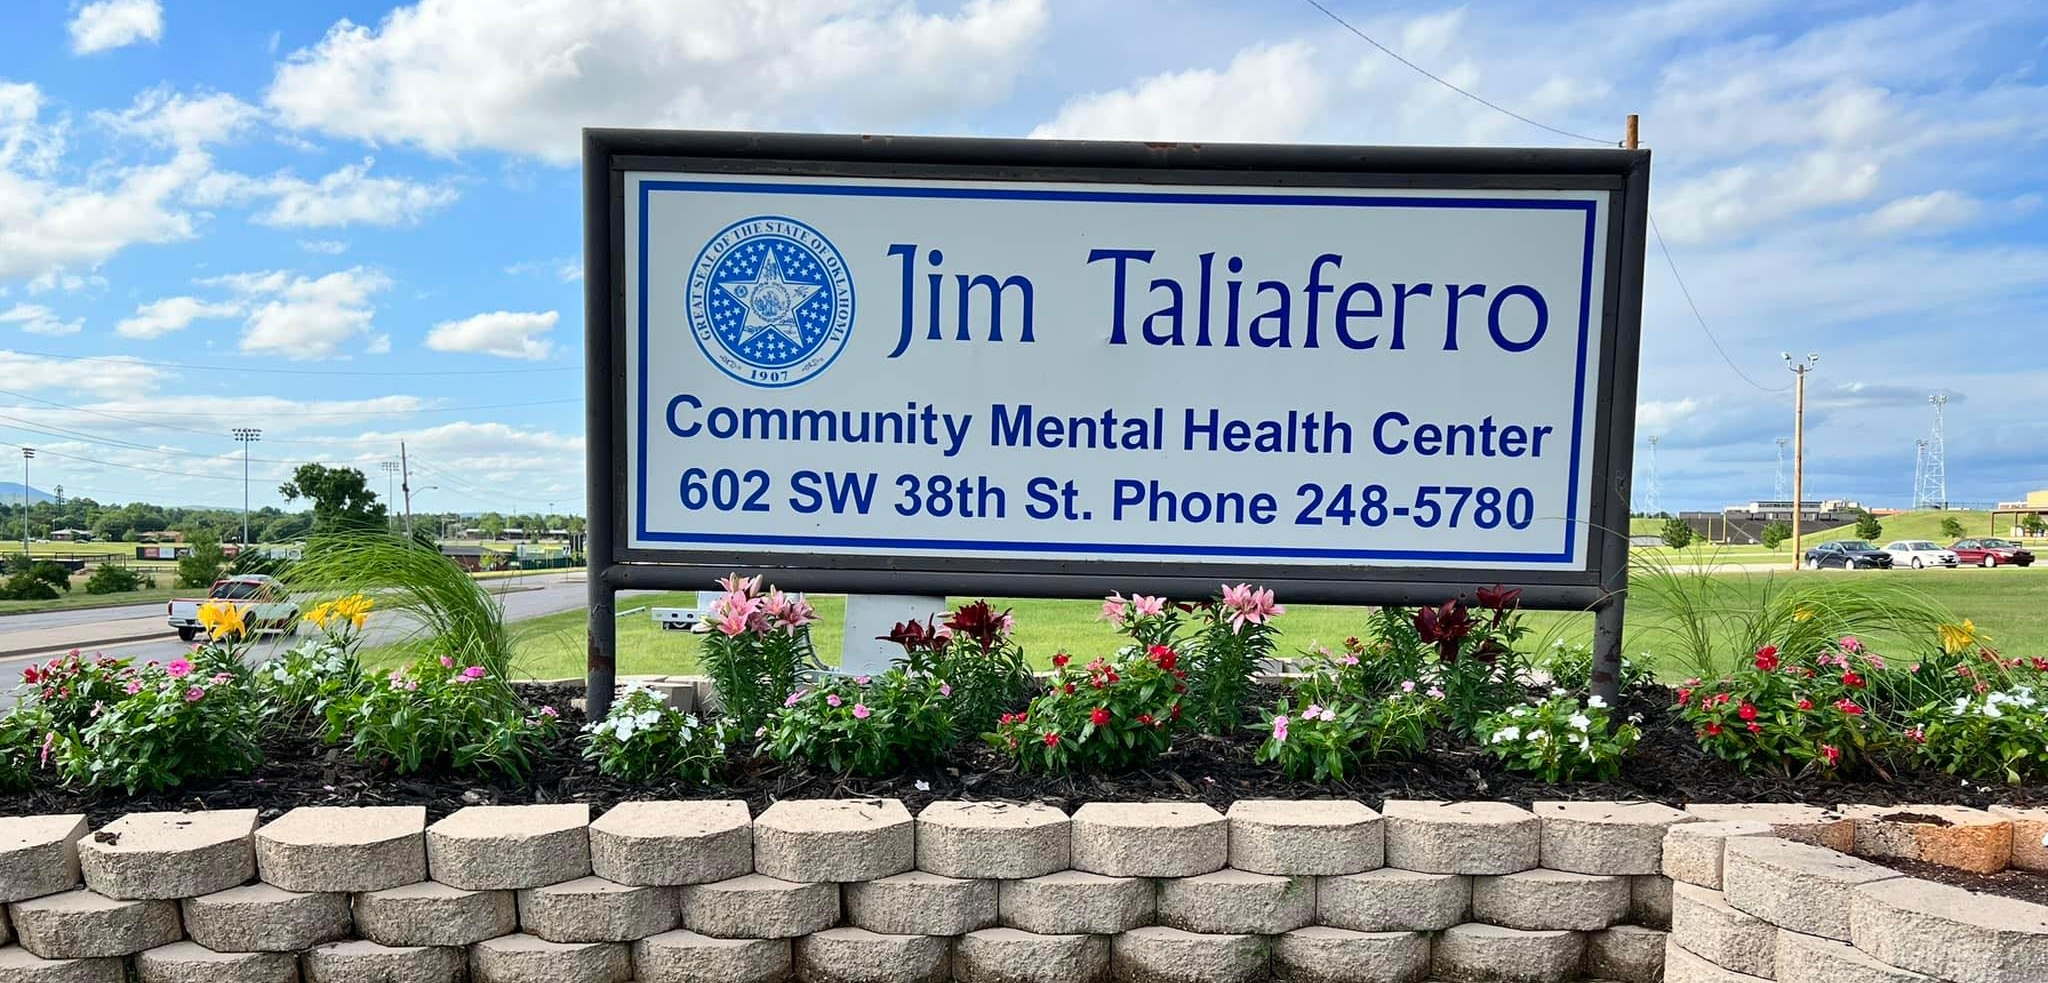 Jim Taliaferro Comm Mental Health Ctr